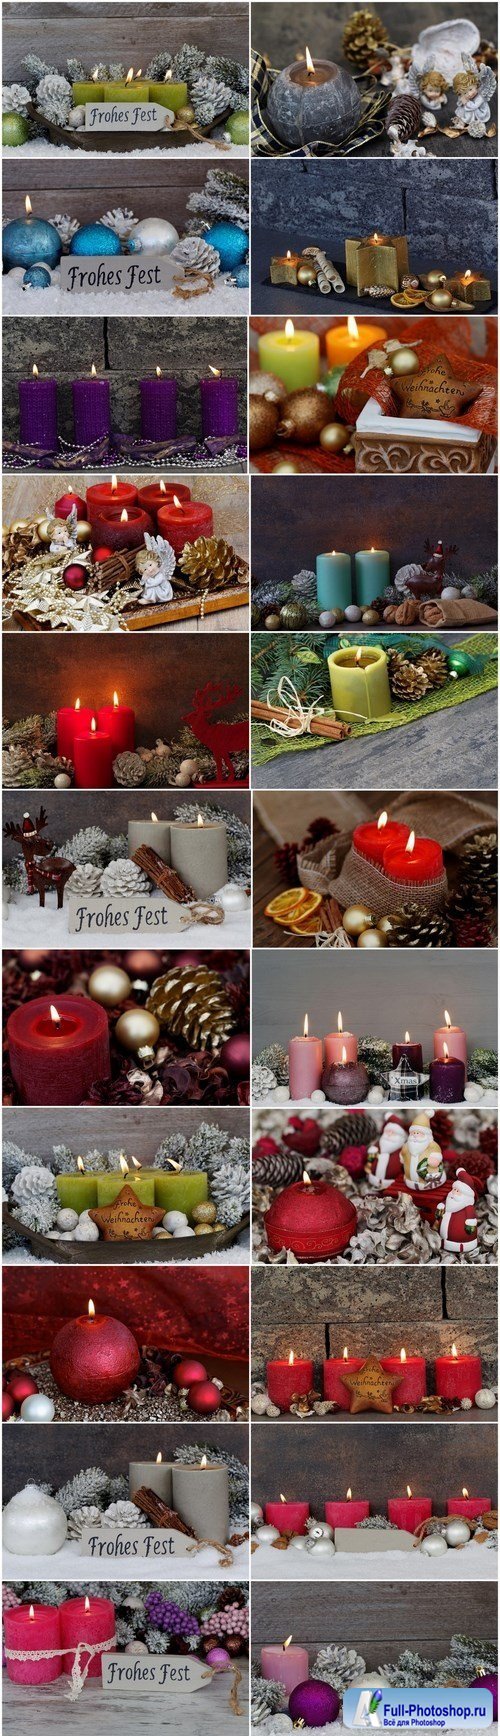 Beautiful Christmas Decorations 4 - 25xUHQ JPEG Photo Stock